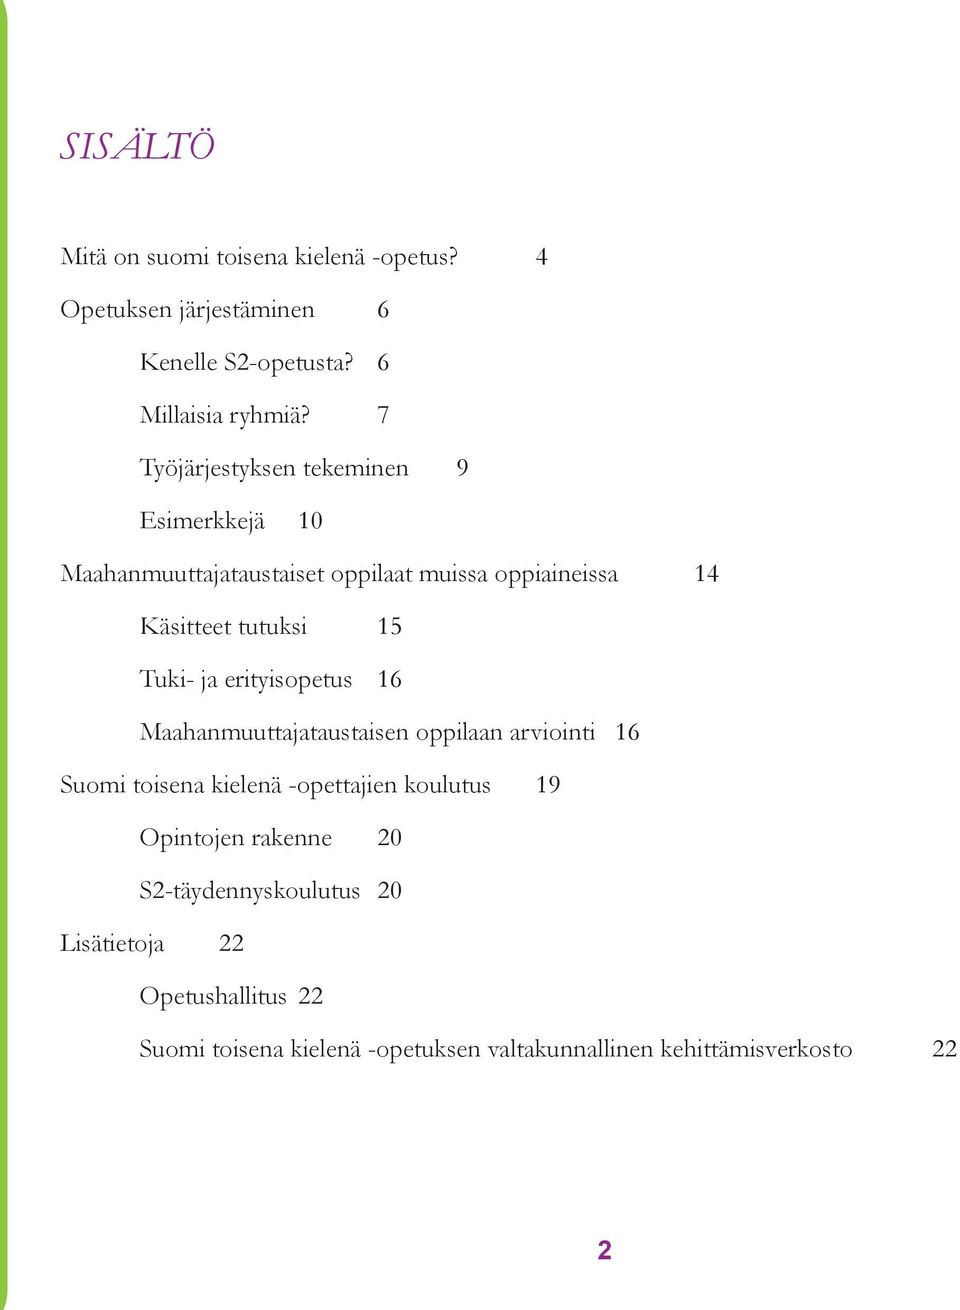 Tuki- ja erityisopetus 16 Maahanmuuttajataustaisen oppilaan arviointi 16 Suomi toisena kielenä -opettajien koulutus 19